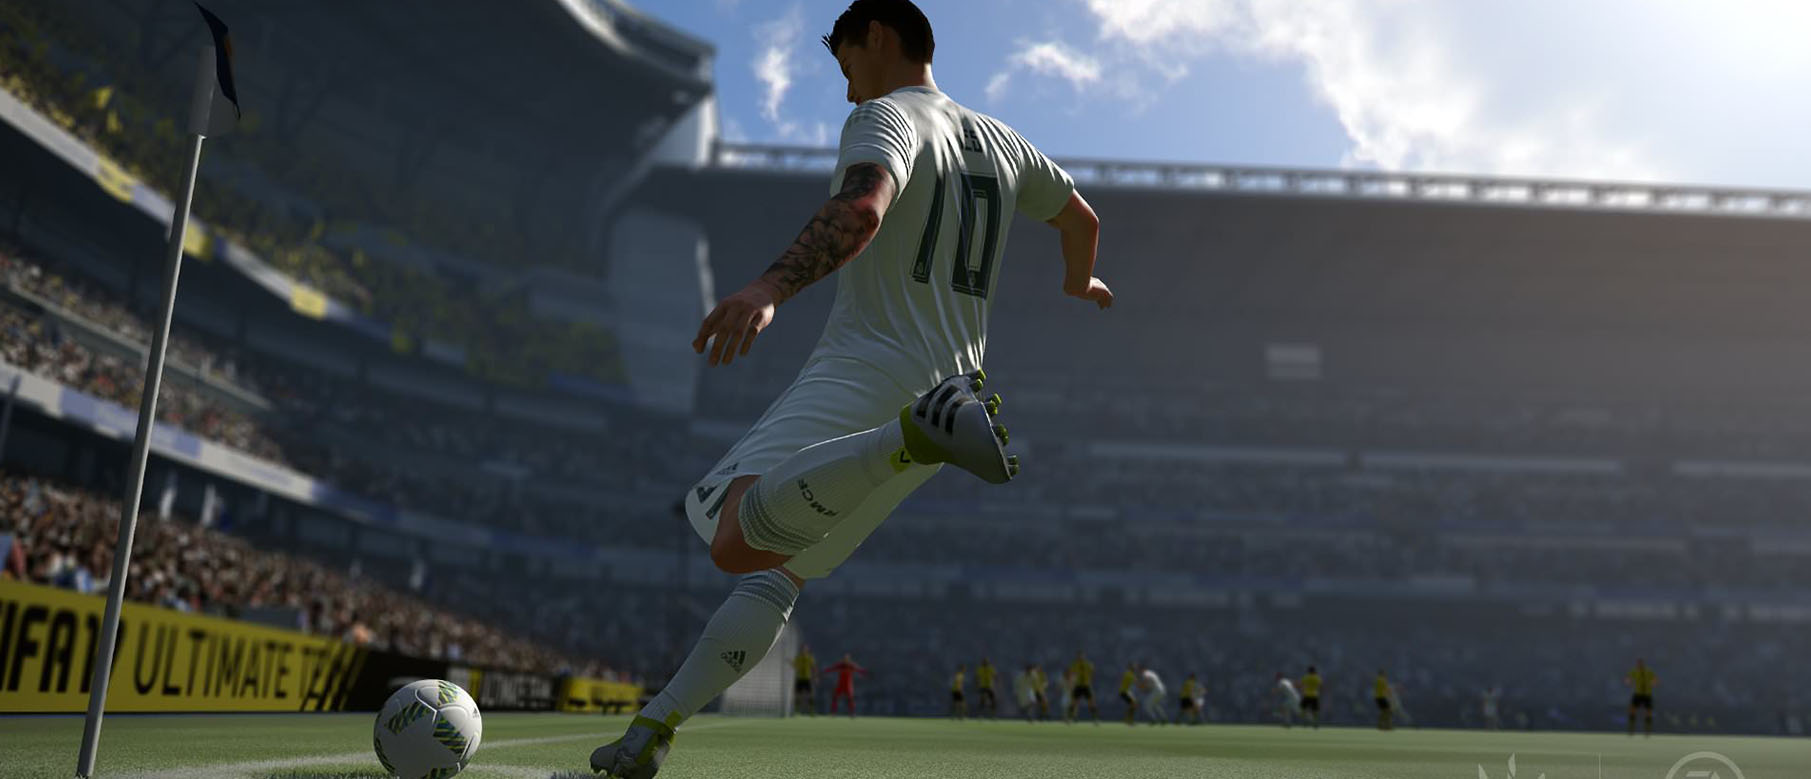 Изображение к Чем визуально отличается FIFA 17 от FIFA 16